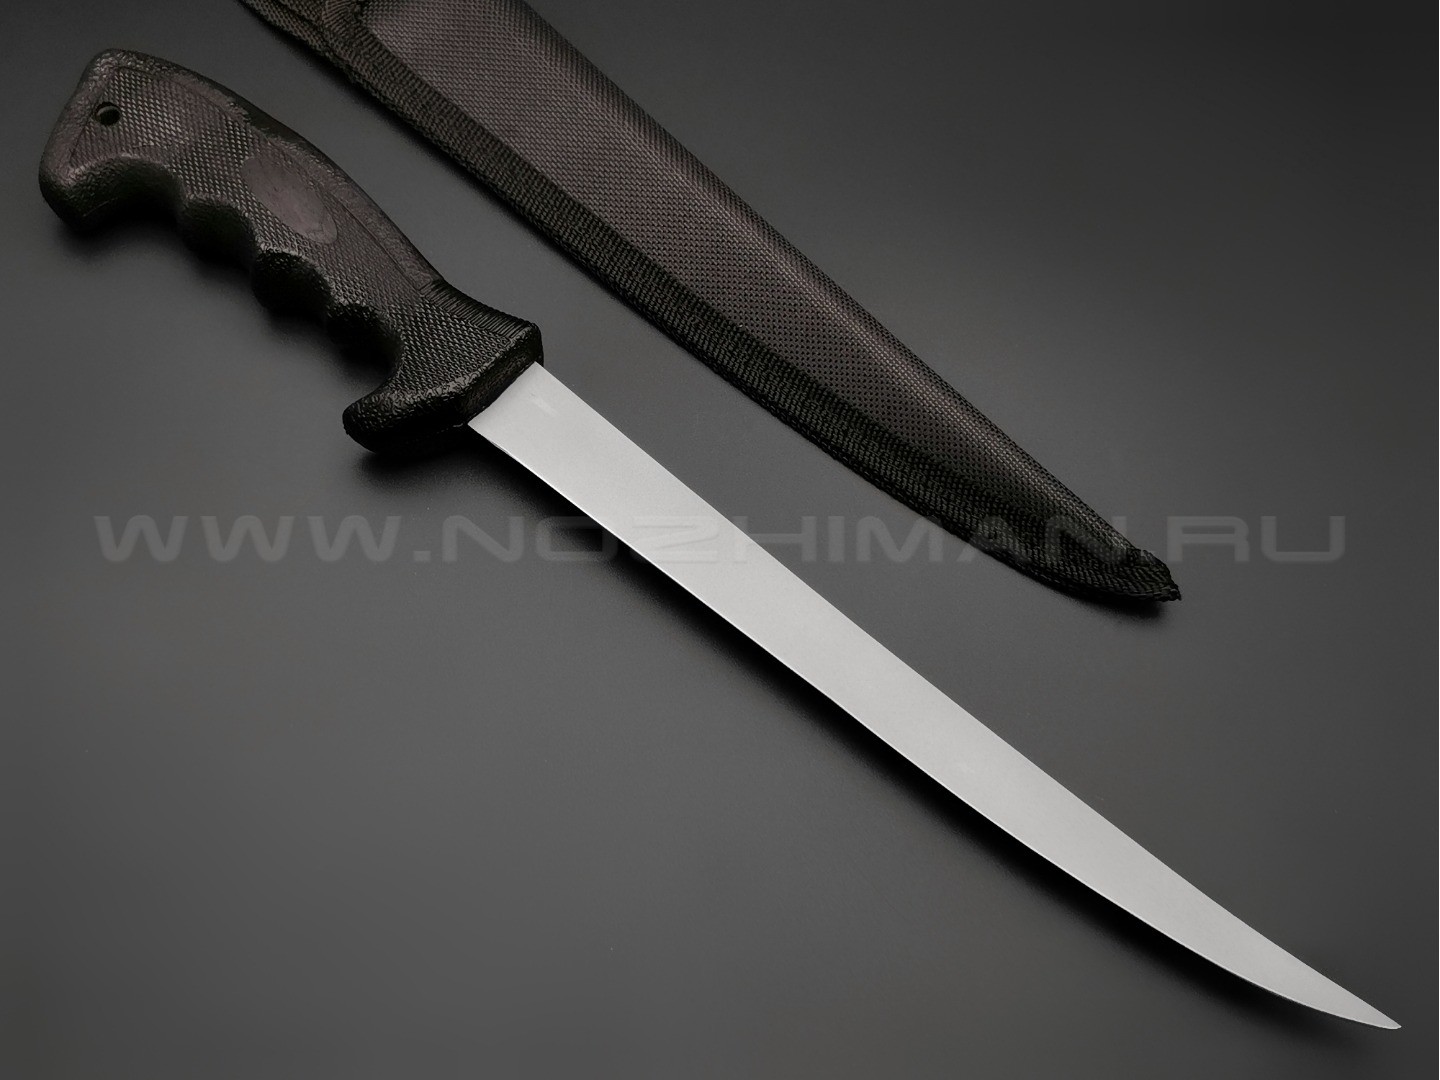 Филейный нож Ahti 230 Titanium 9667A нержавеющая сталь, рукоять резина